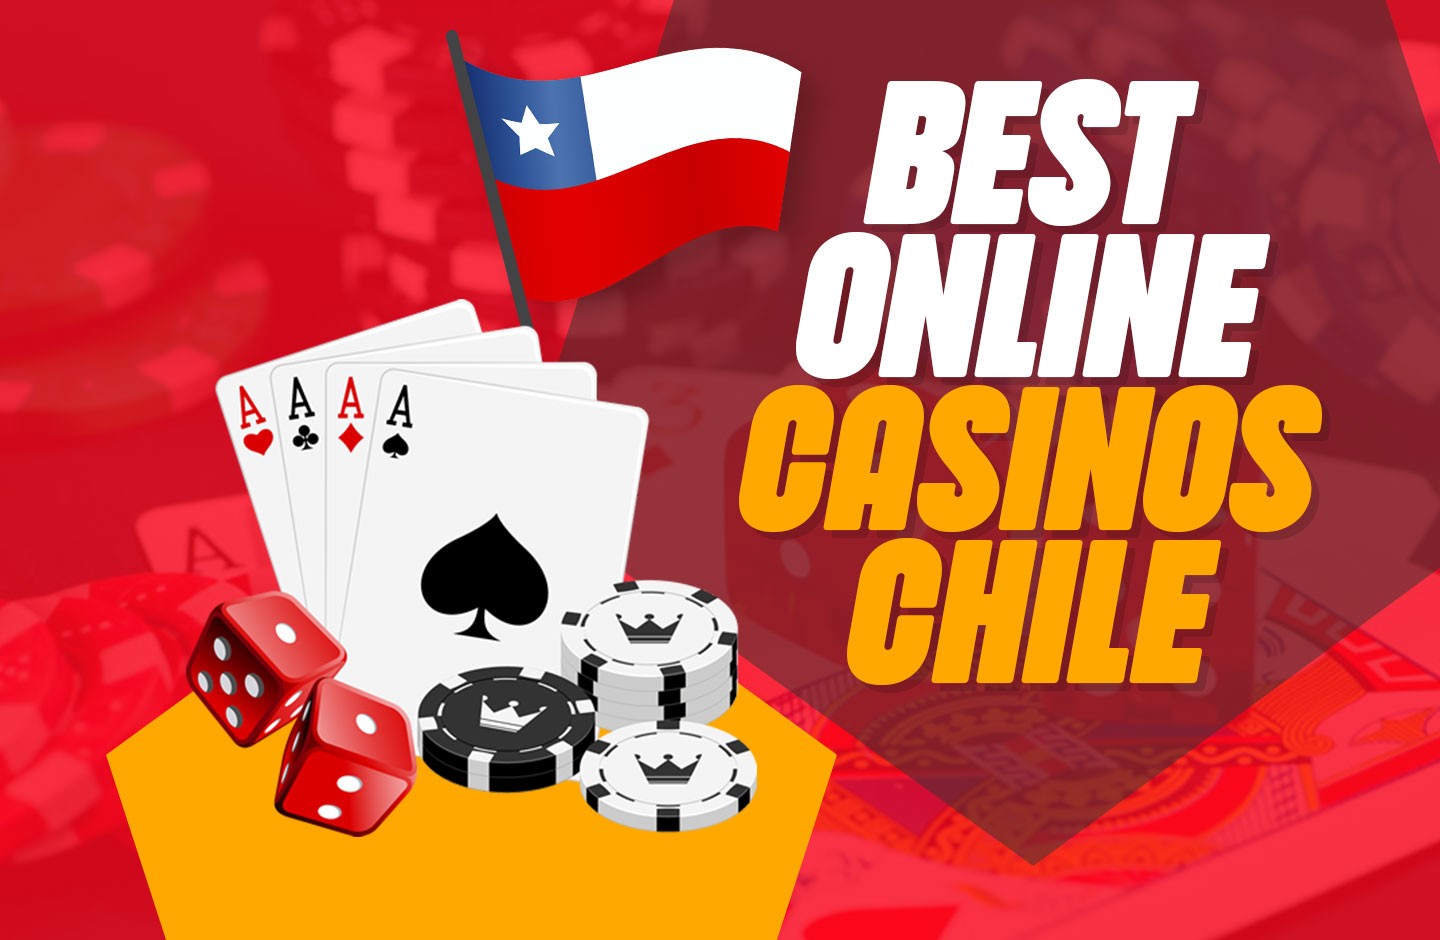 Prueba de que casinos Chile es exactamente lo que está buscando